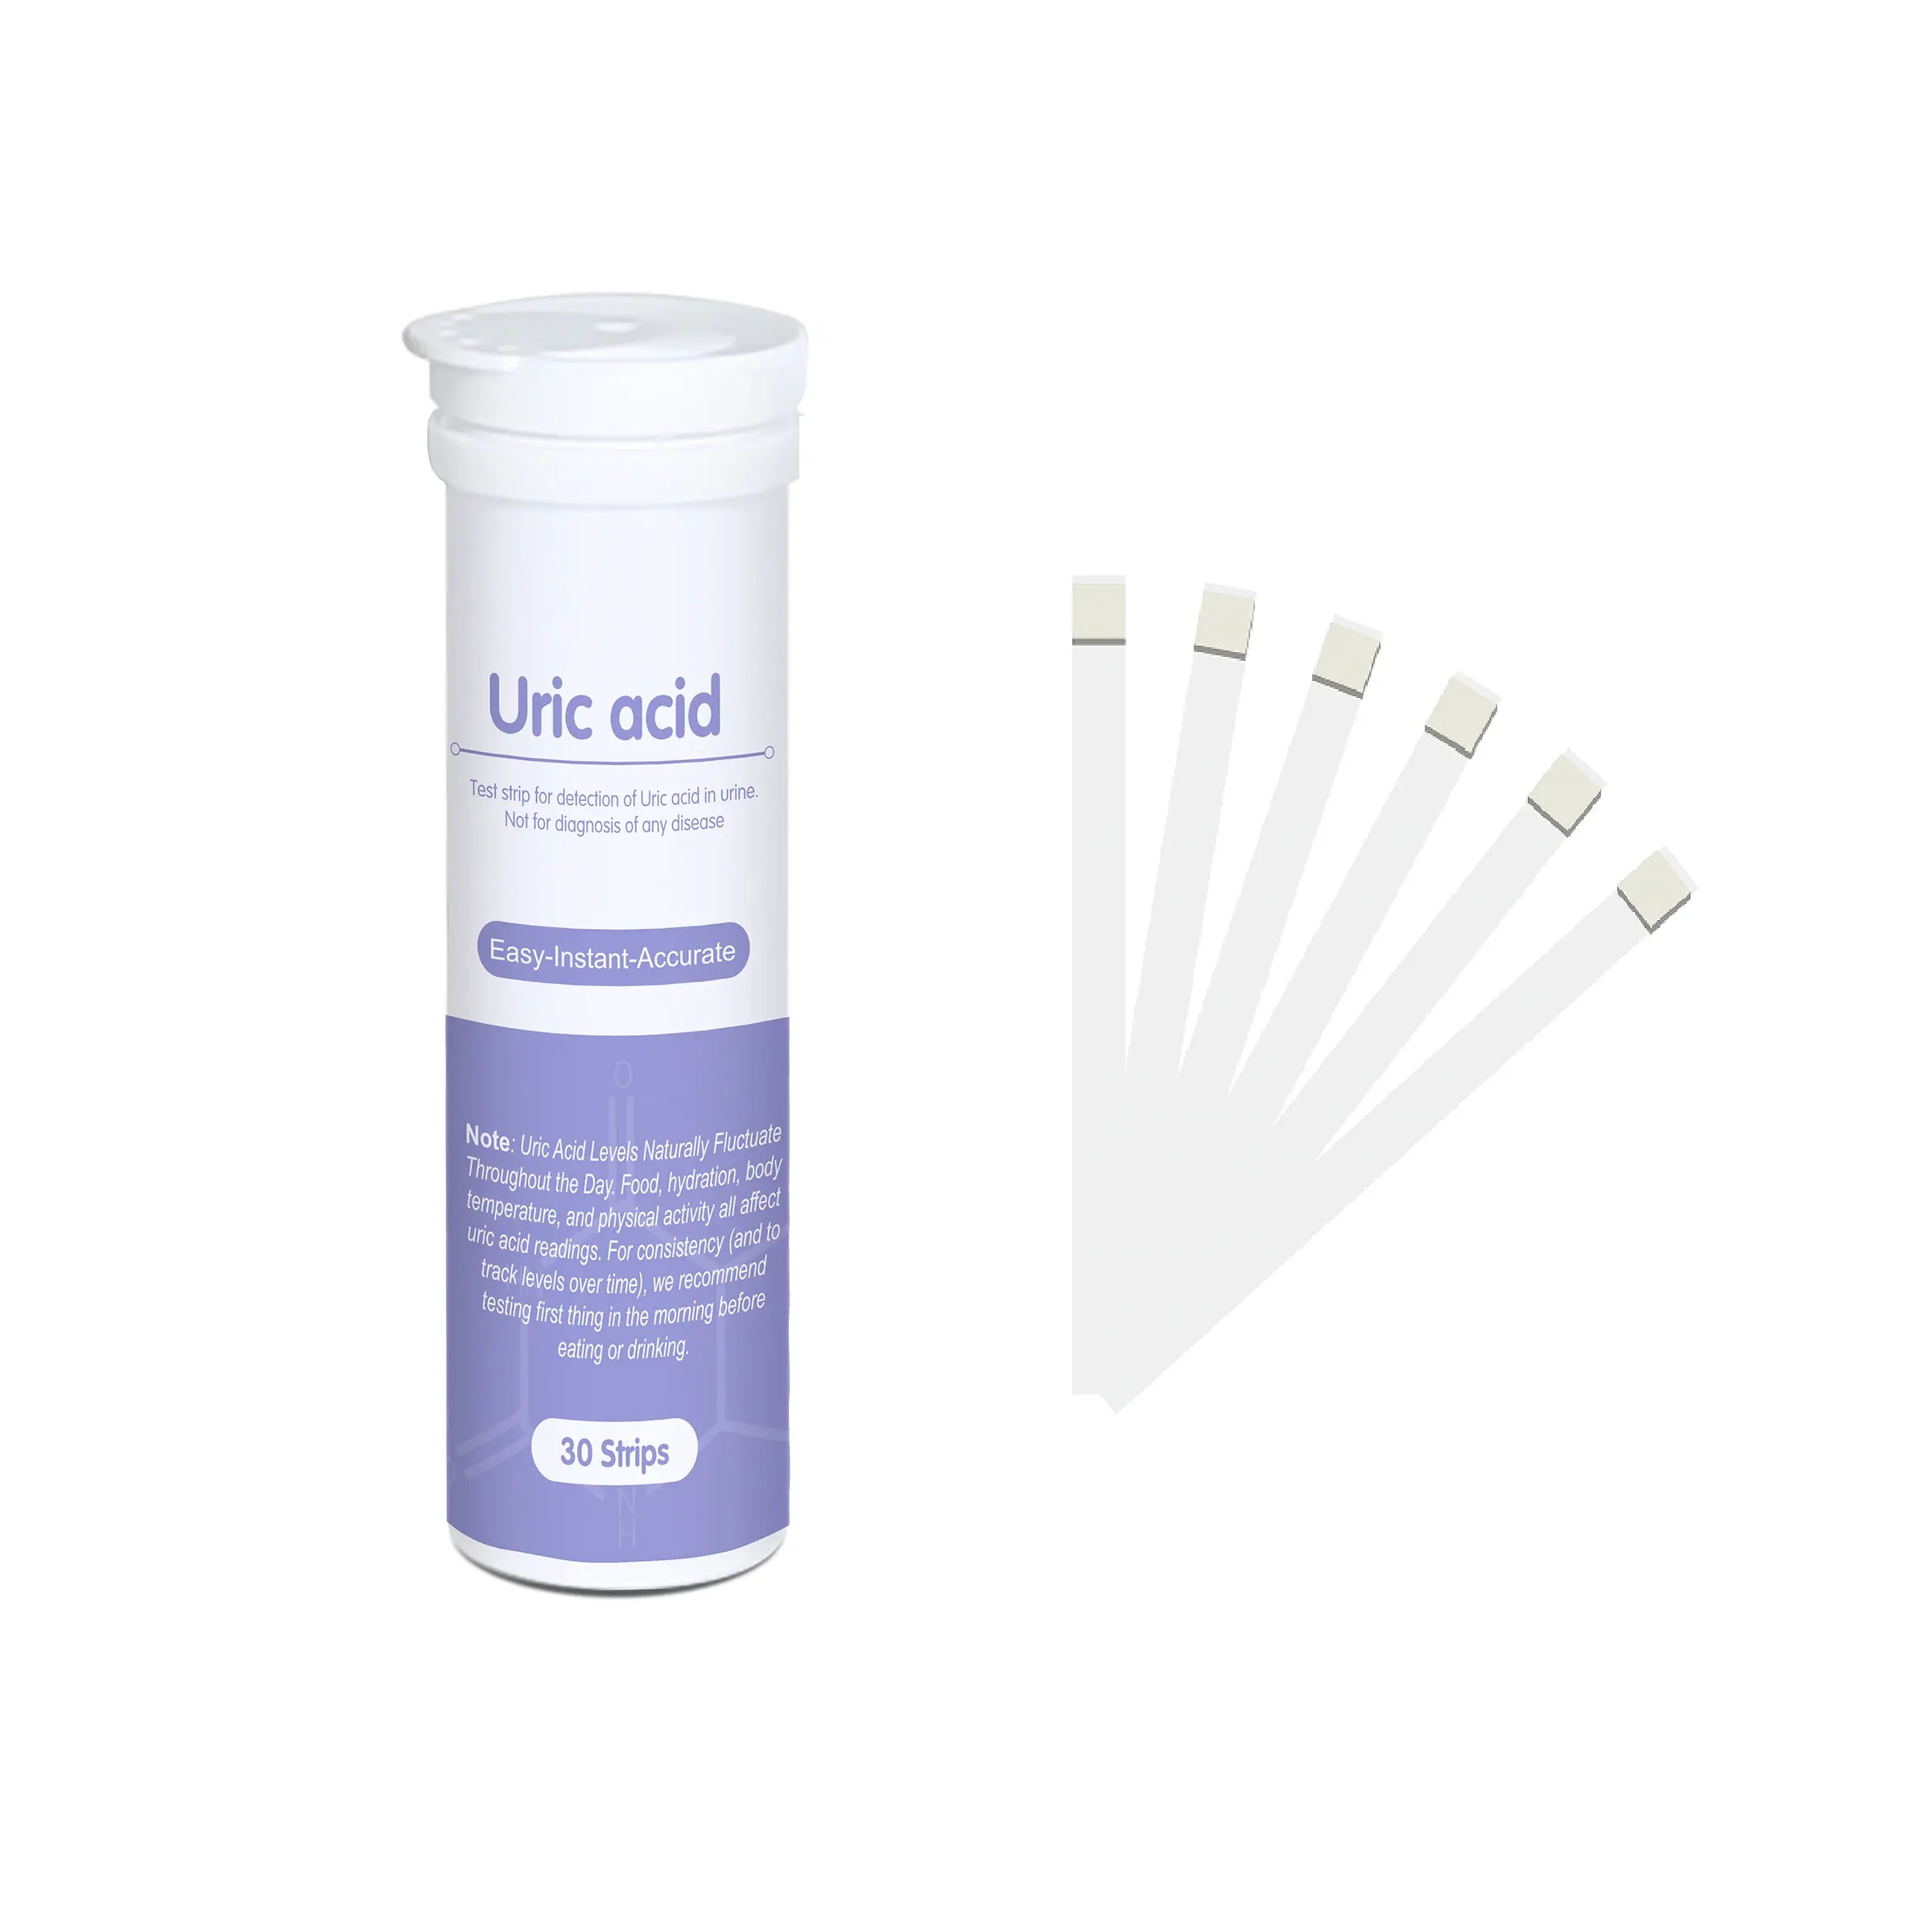 Bandelettes de test d'urine rapides et faciles pour l'analyse d'urine testant l'acide dans l'urine